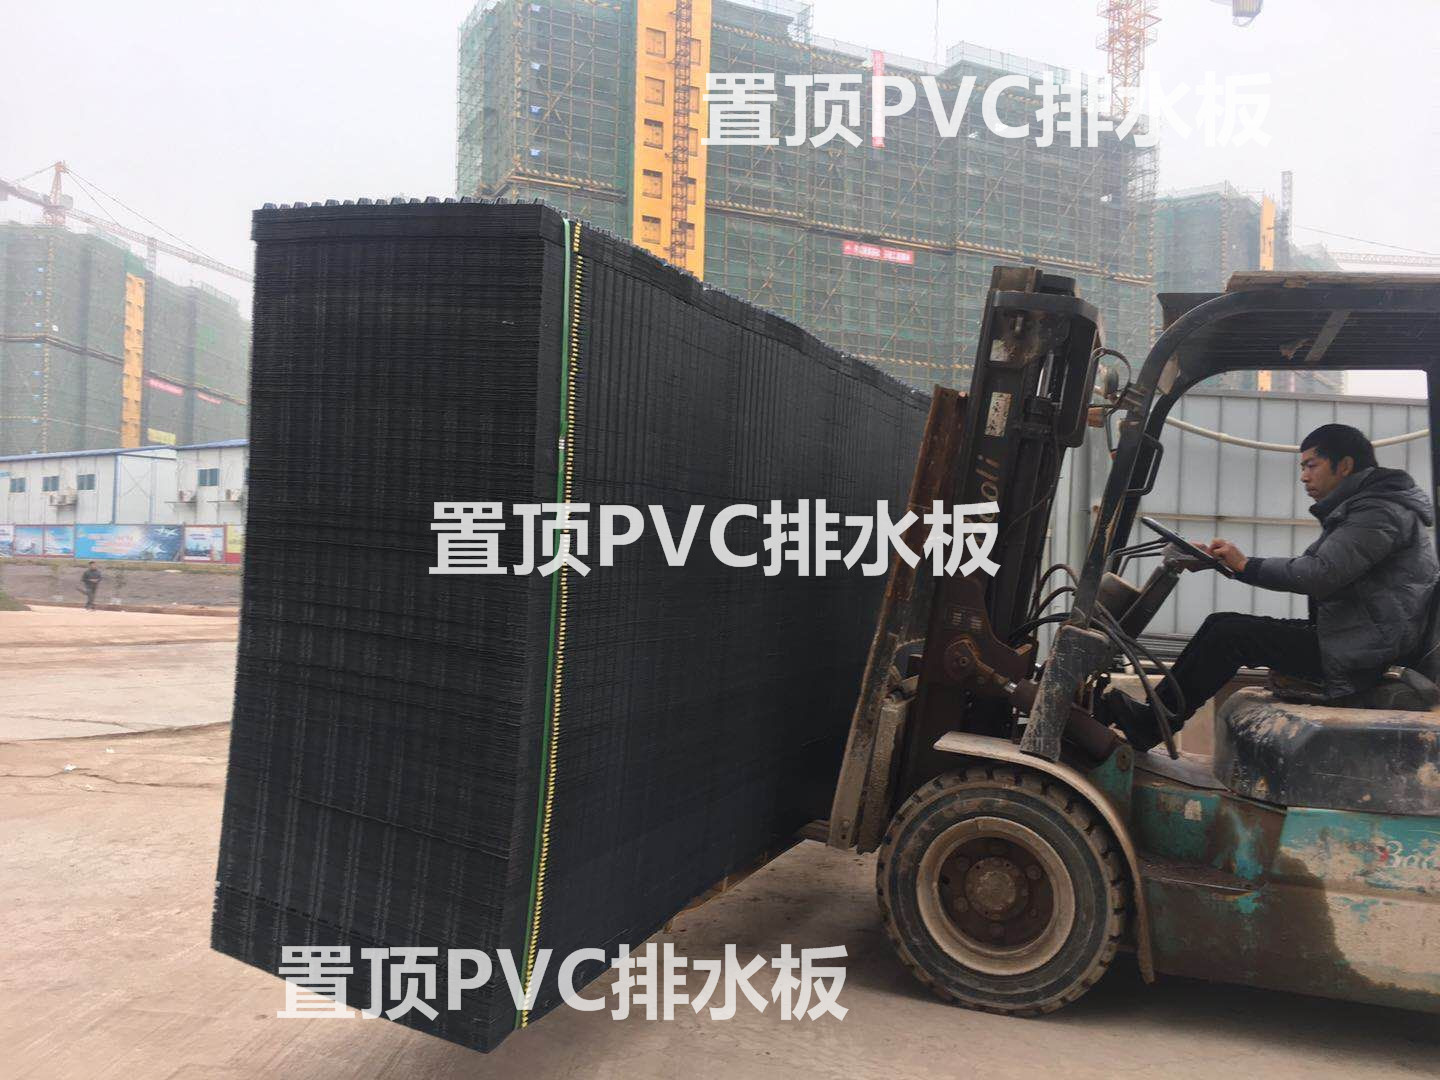 浙江PVC排水板厂家|台州凹凸排水板厂家直销 PVC排水板哪家好 PVC排水板批发图片